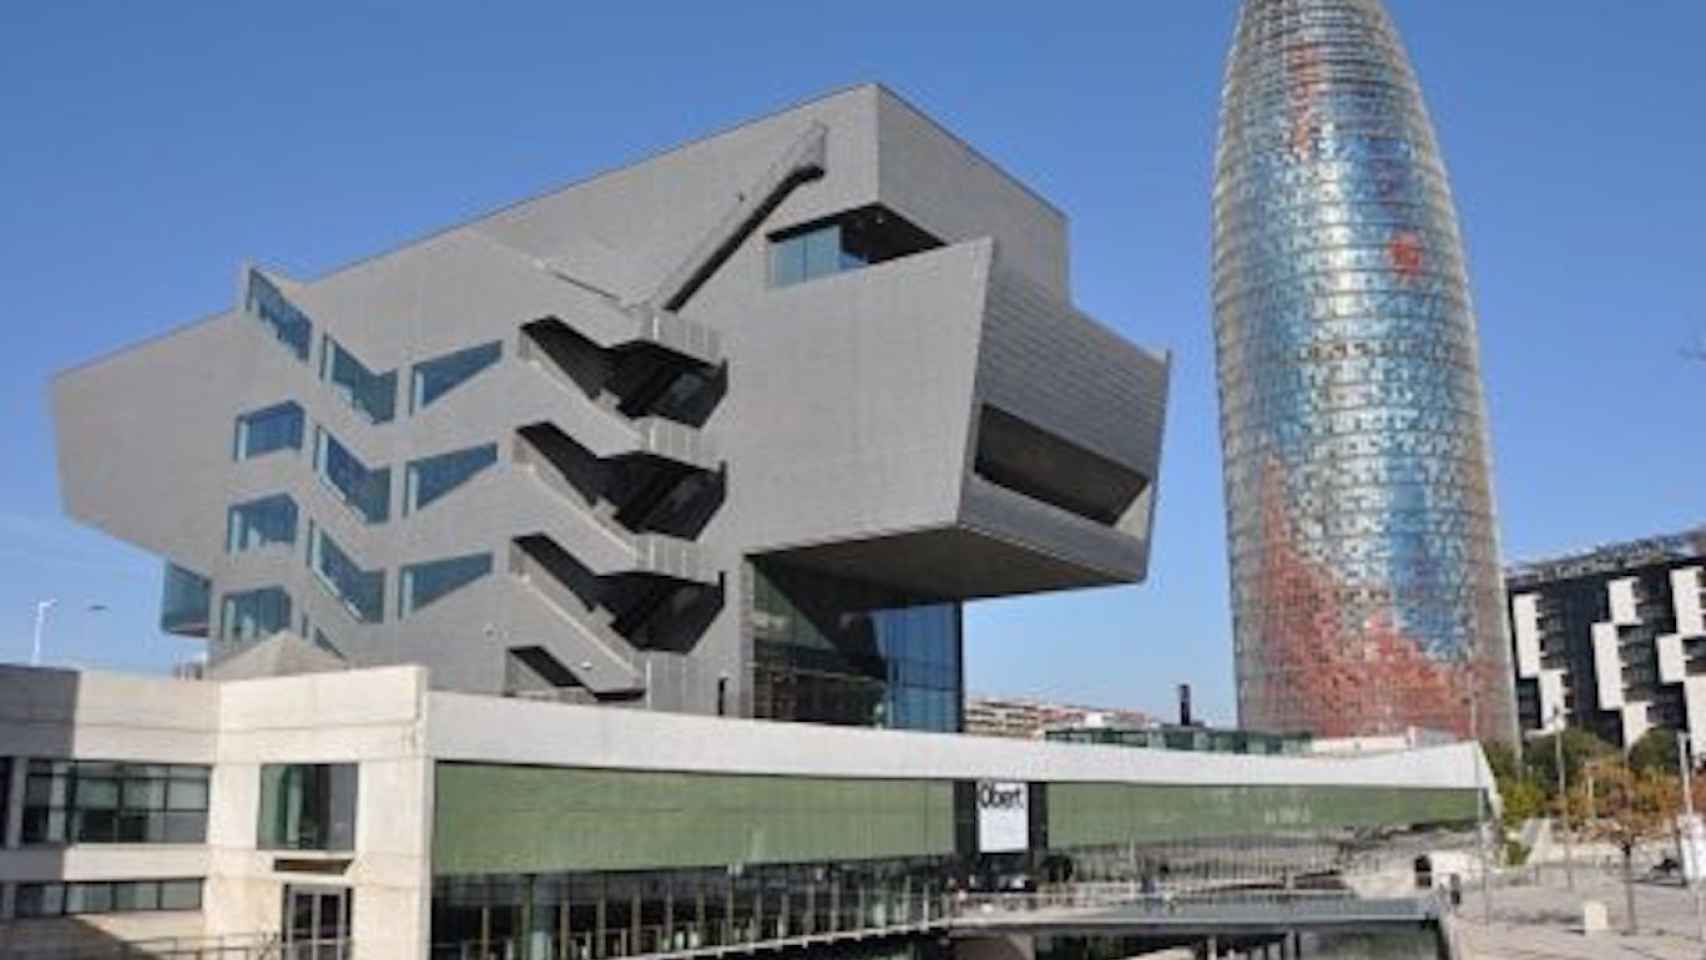 El museo del Disseny Hub de Barcelona, un proyecto de Oriol Bohigas / AYUNTAMIENTO DE BARCELONA